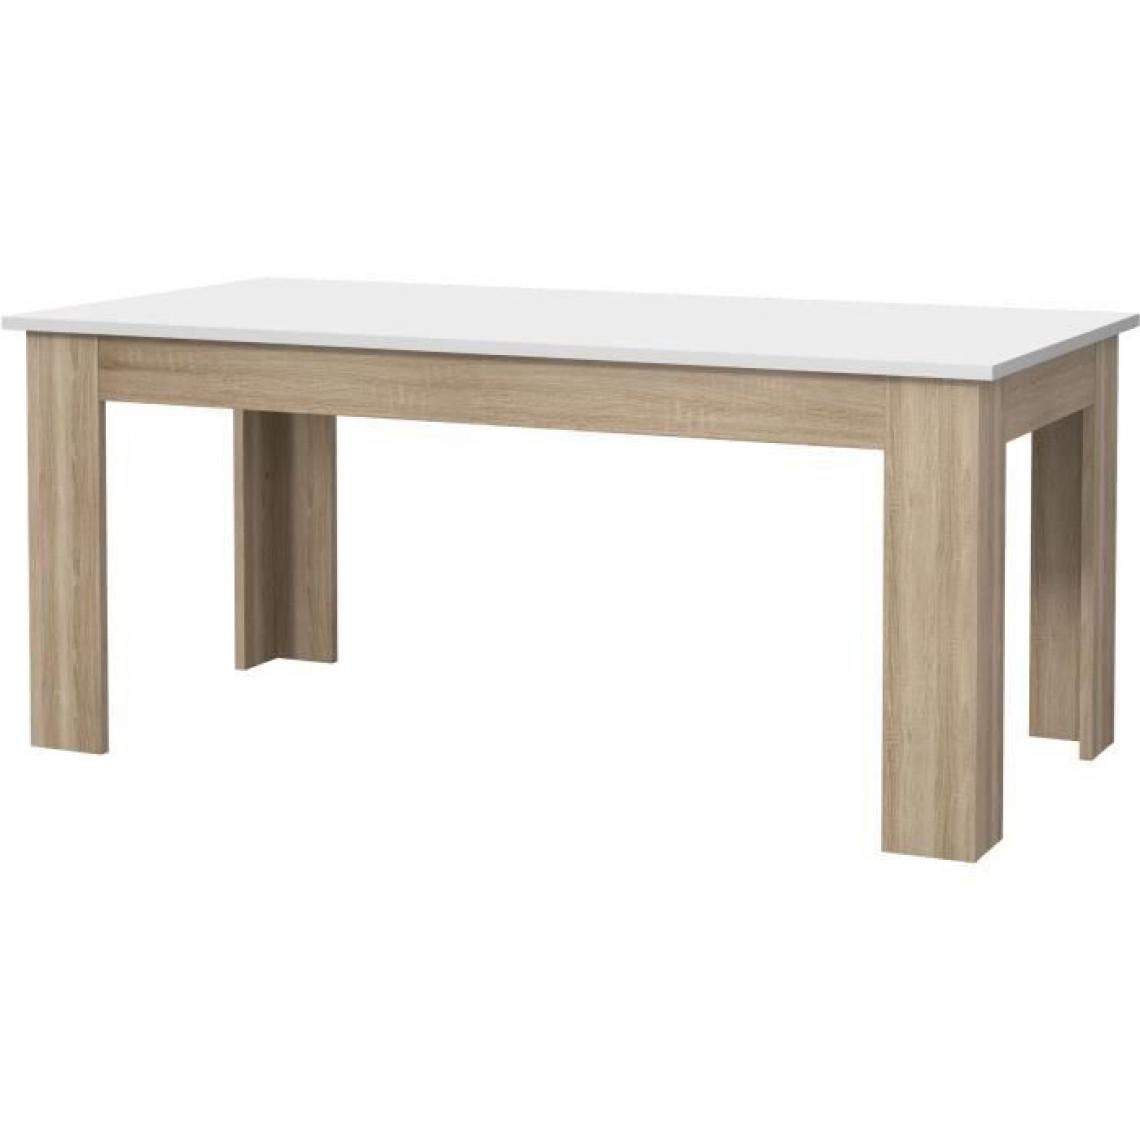 Cstore - CSTORE - pilvi table à manger - blanc et chêne sonoma - l 180xi90xh 75 cm - Tables à manger